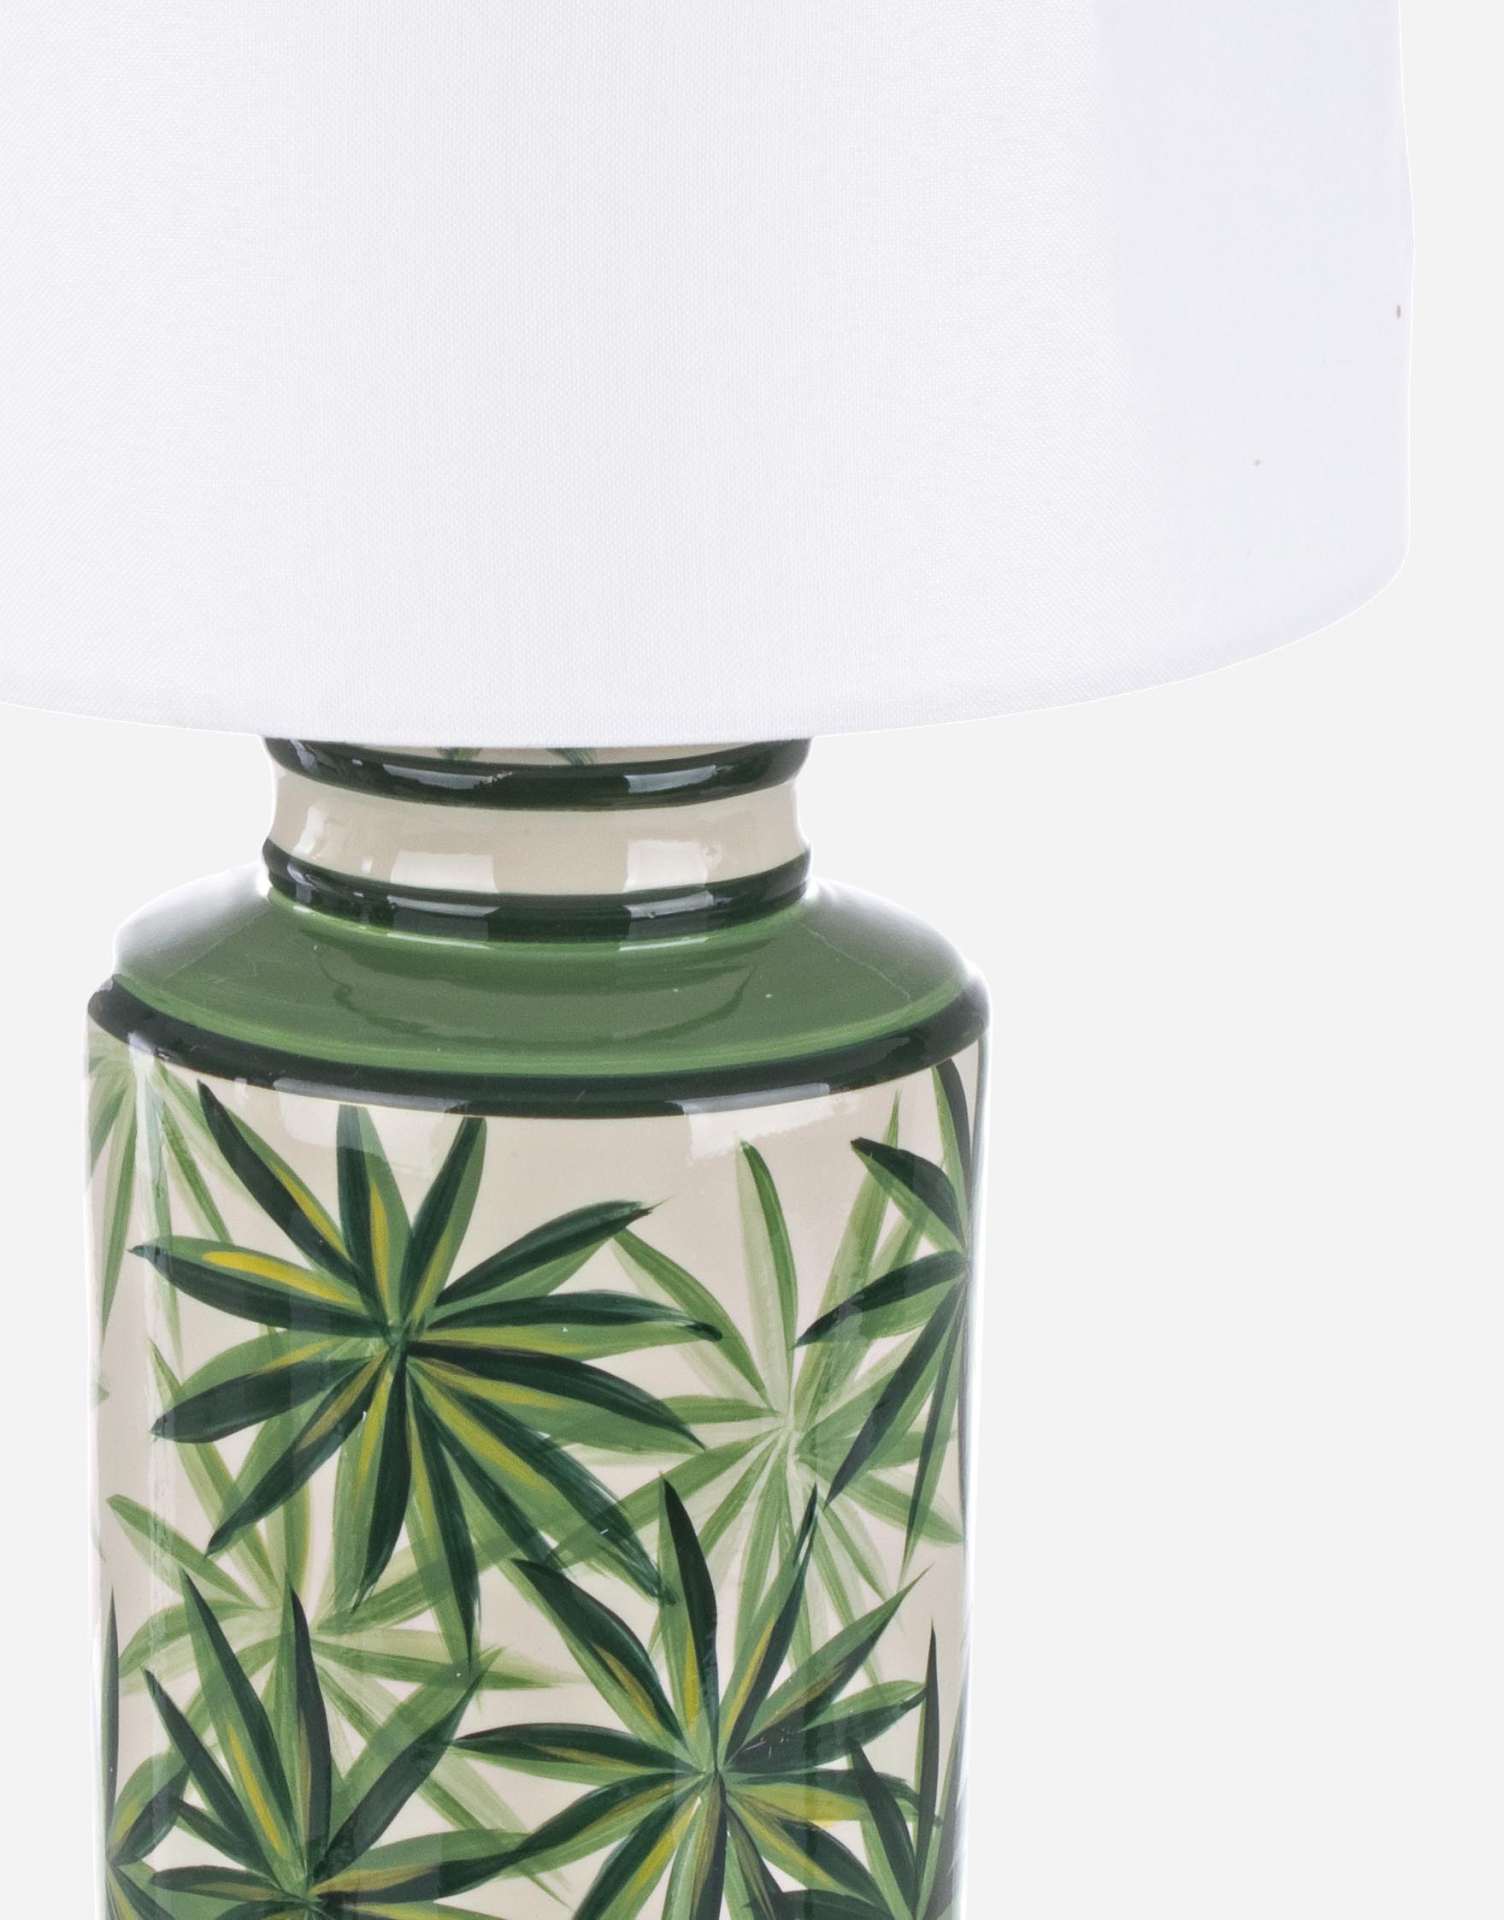 Die Tischleuchte Tropic überzeugt mit ihrem klassischen Design. Gefertigt wurde sie aus Porzellan, welches einen grünen Farbton besitzt. Die Lampenschirme ist aus Polyester und hat eine weiße Farbe. Die Lampe besitzt eine Höhe von 63 cm.